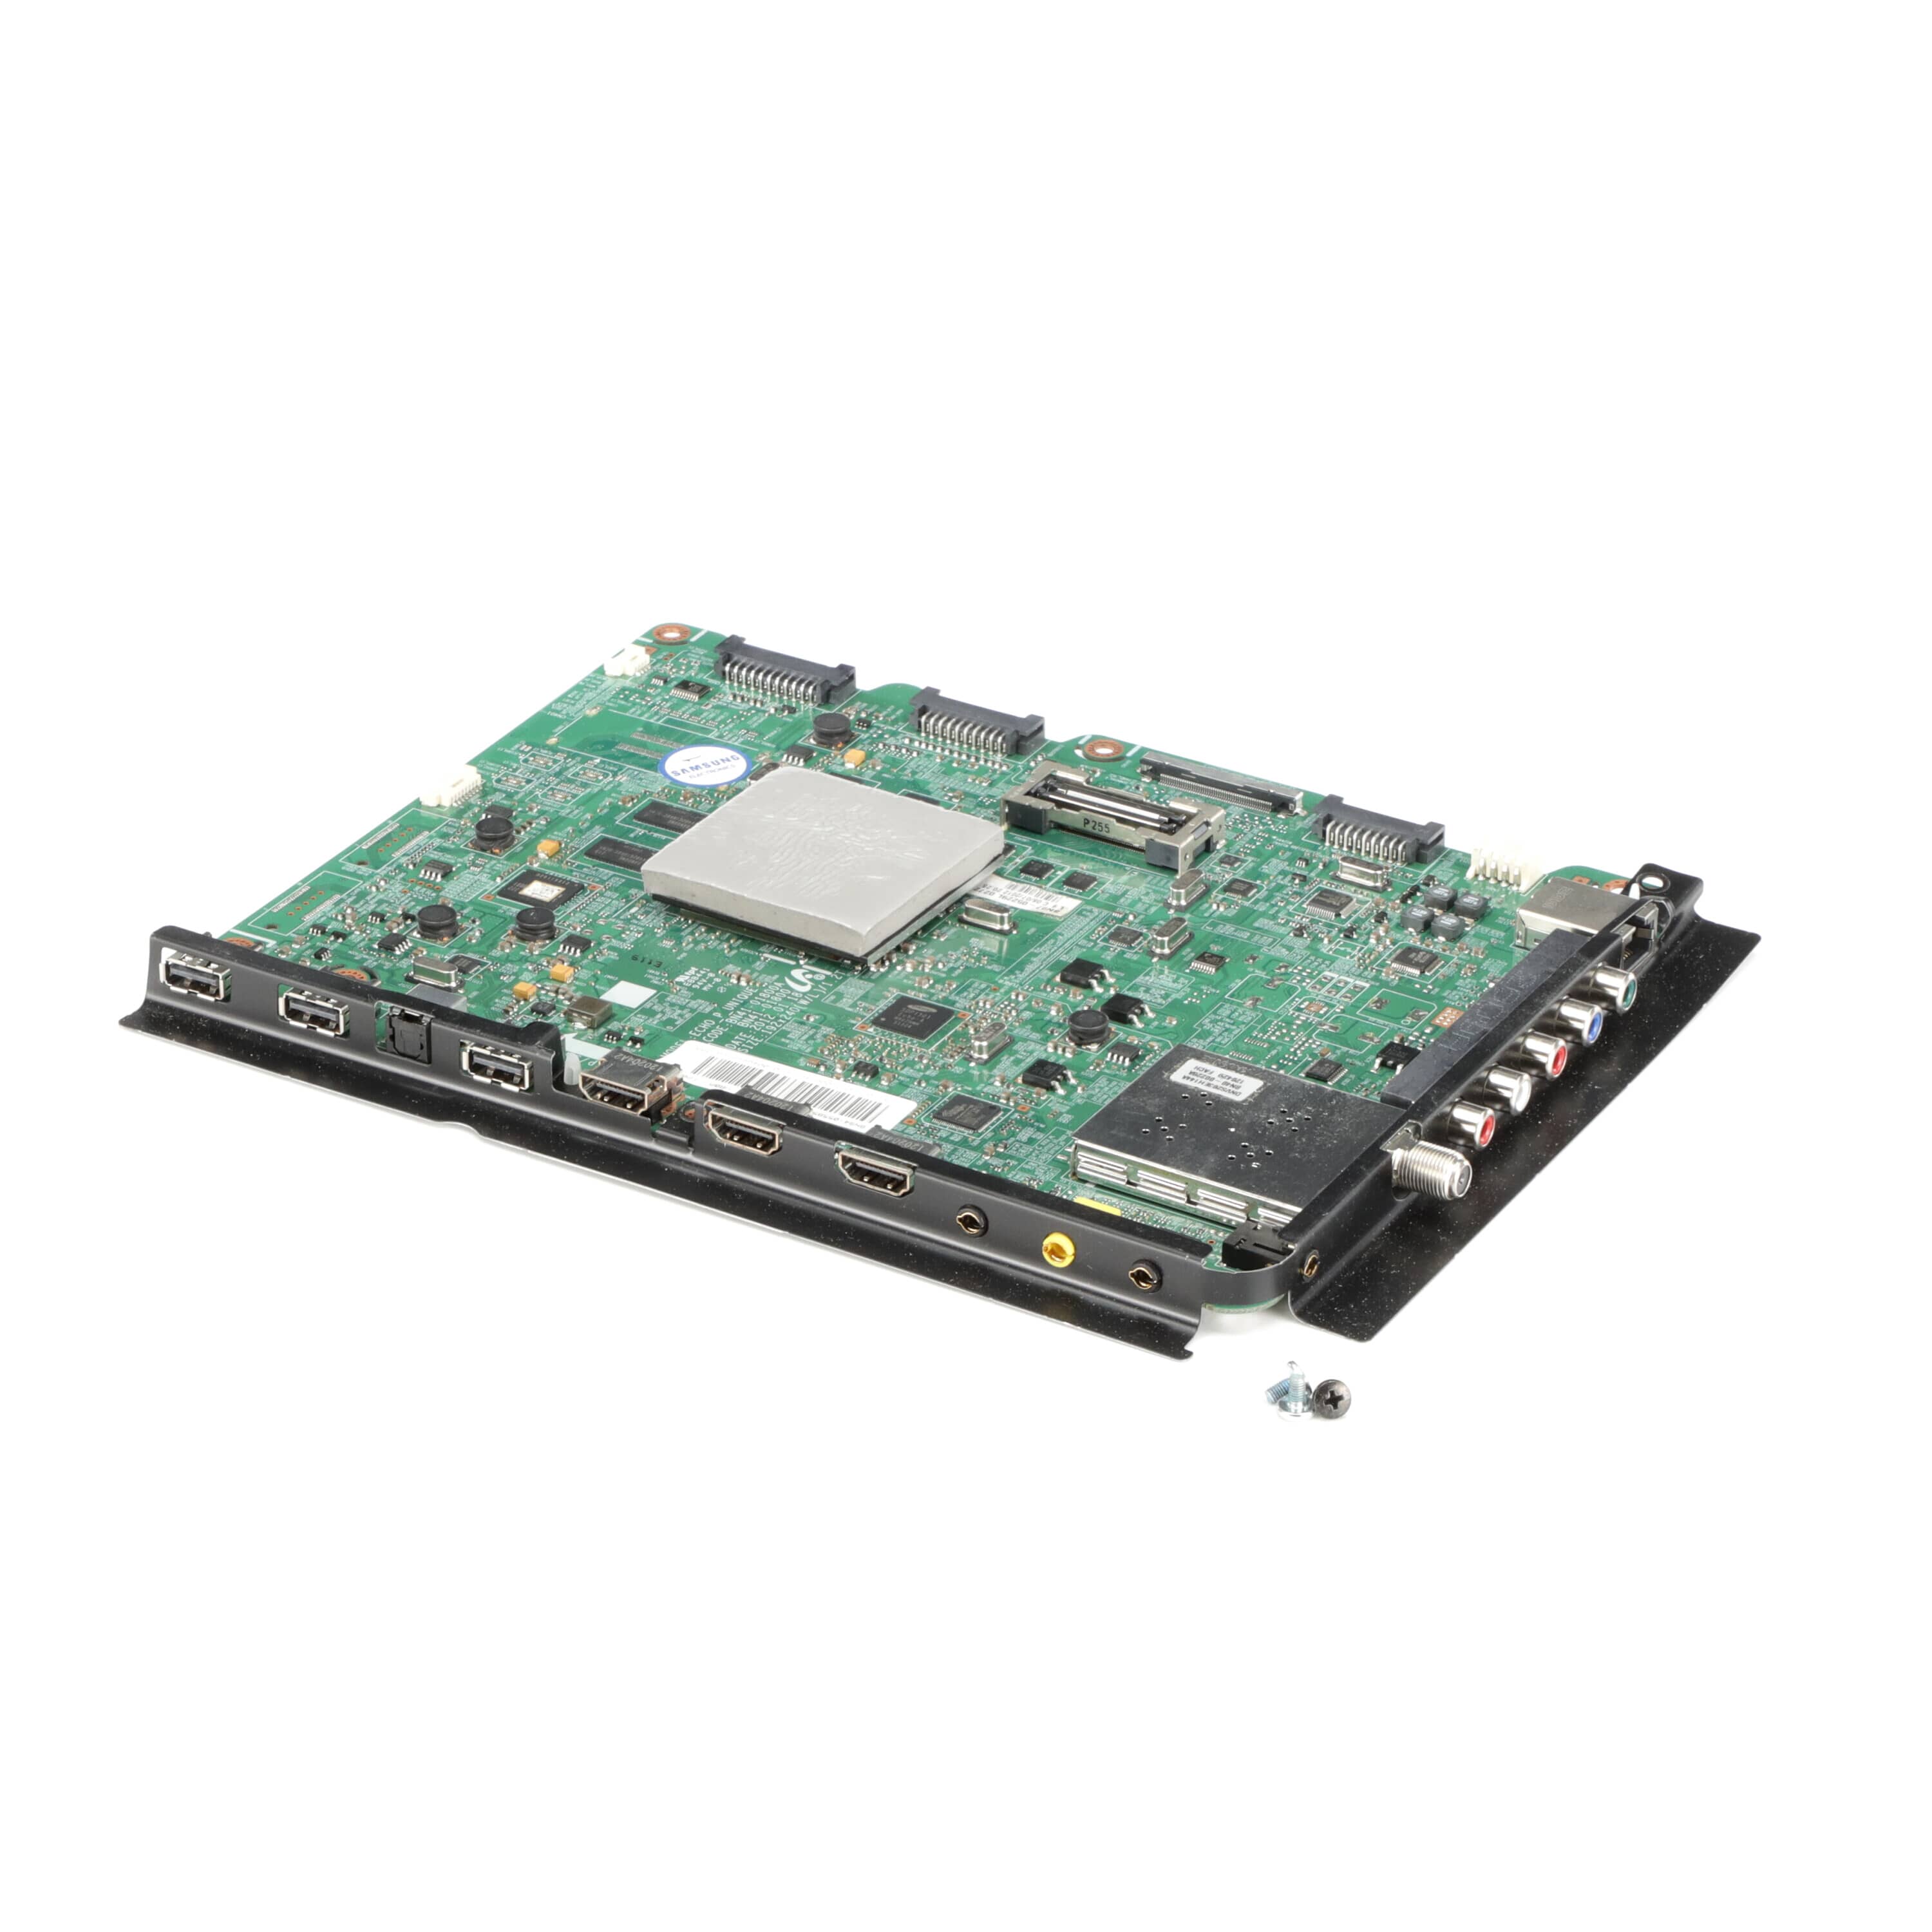 SMGBN94-05585B Main PCB Board Assembly - Samsung Parts USA